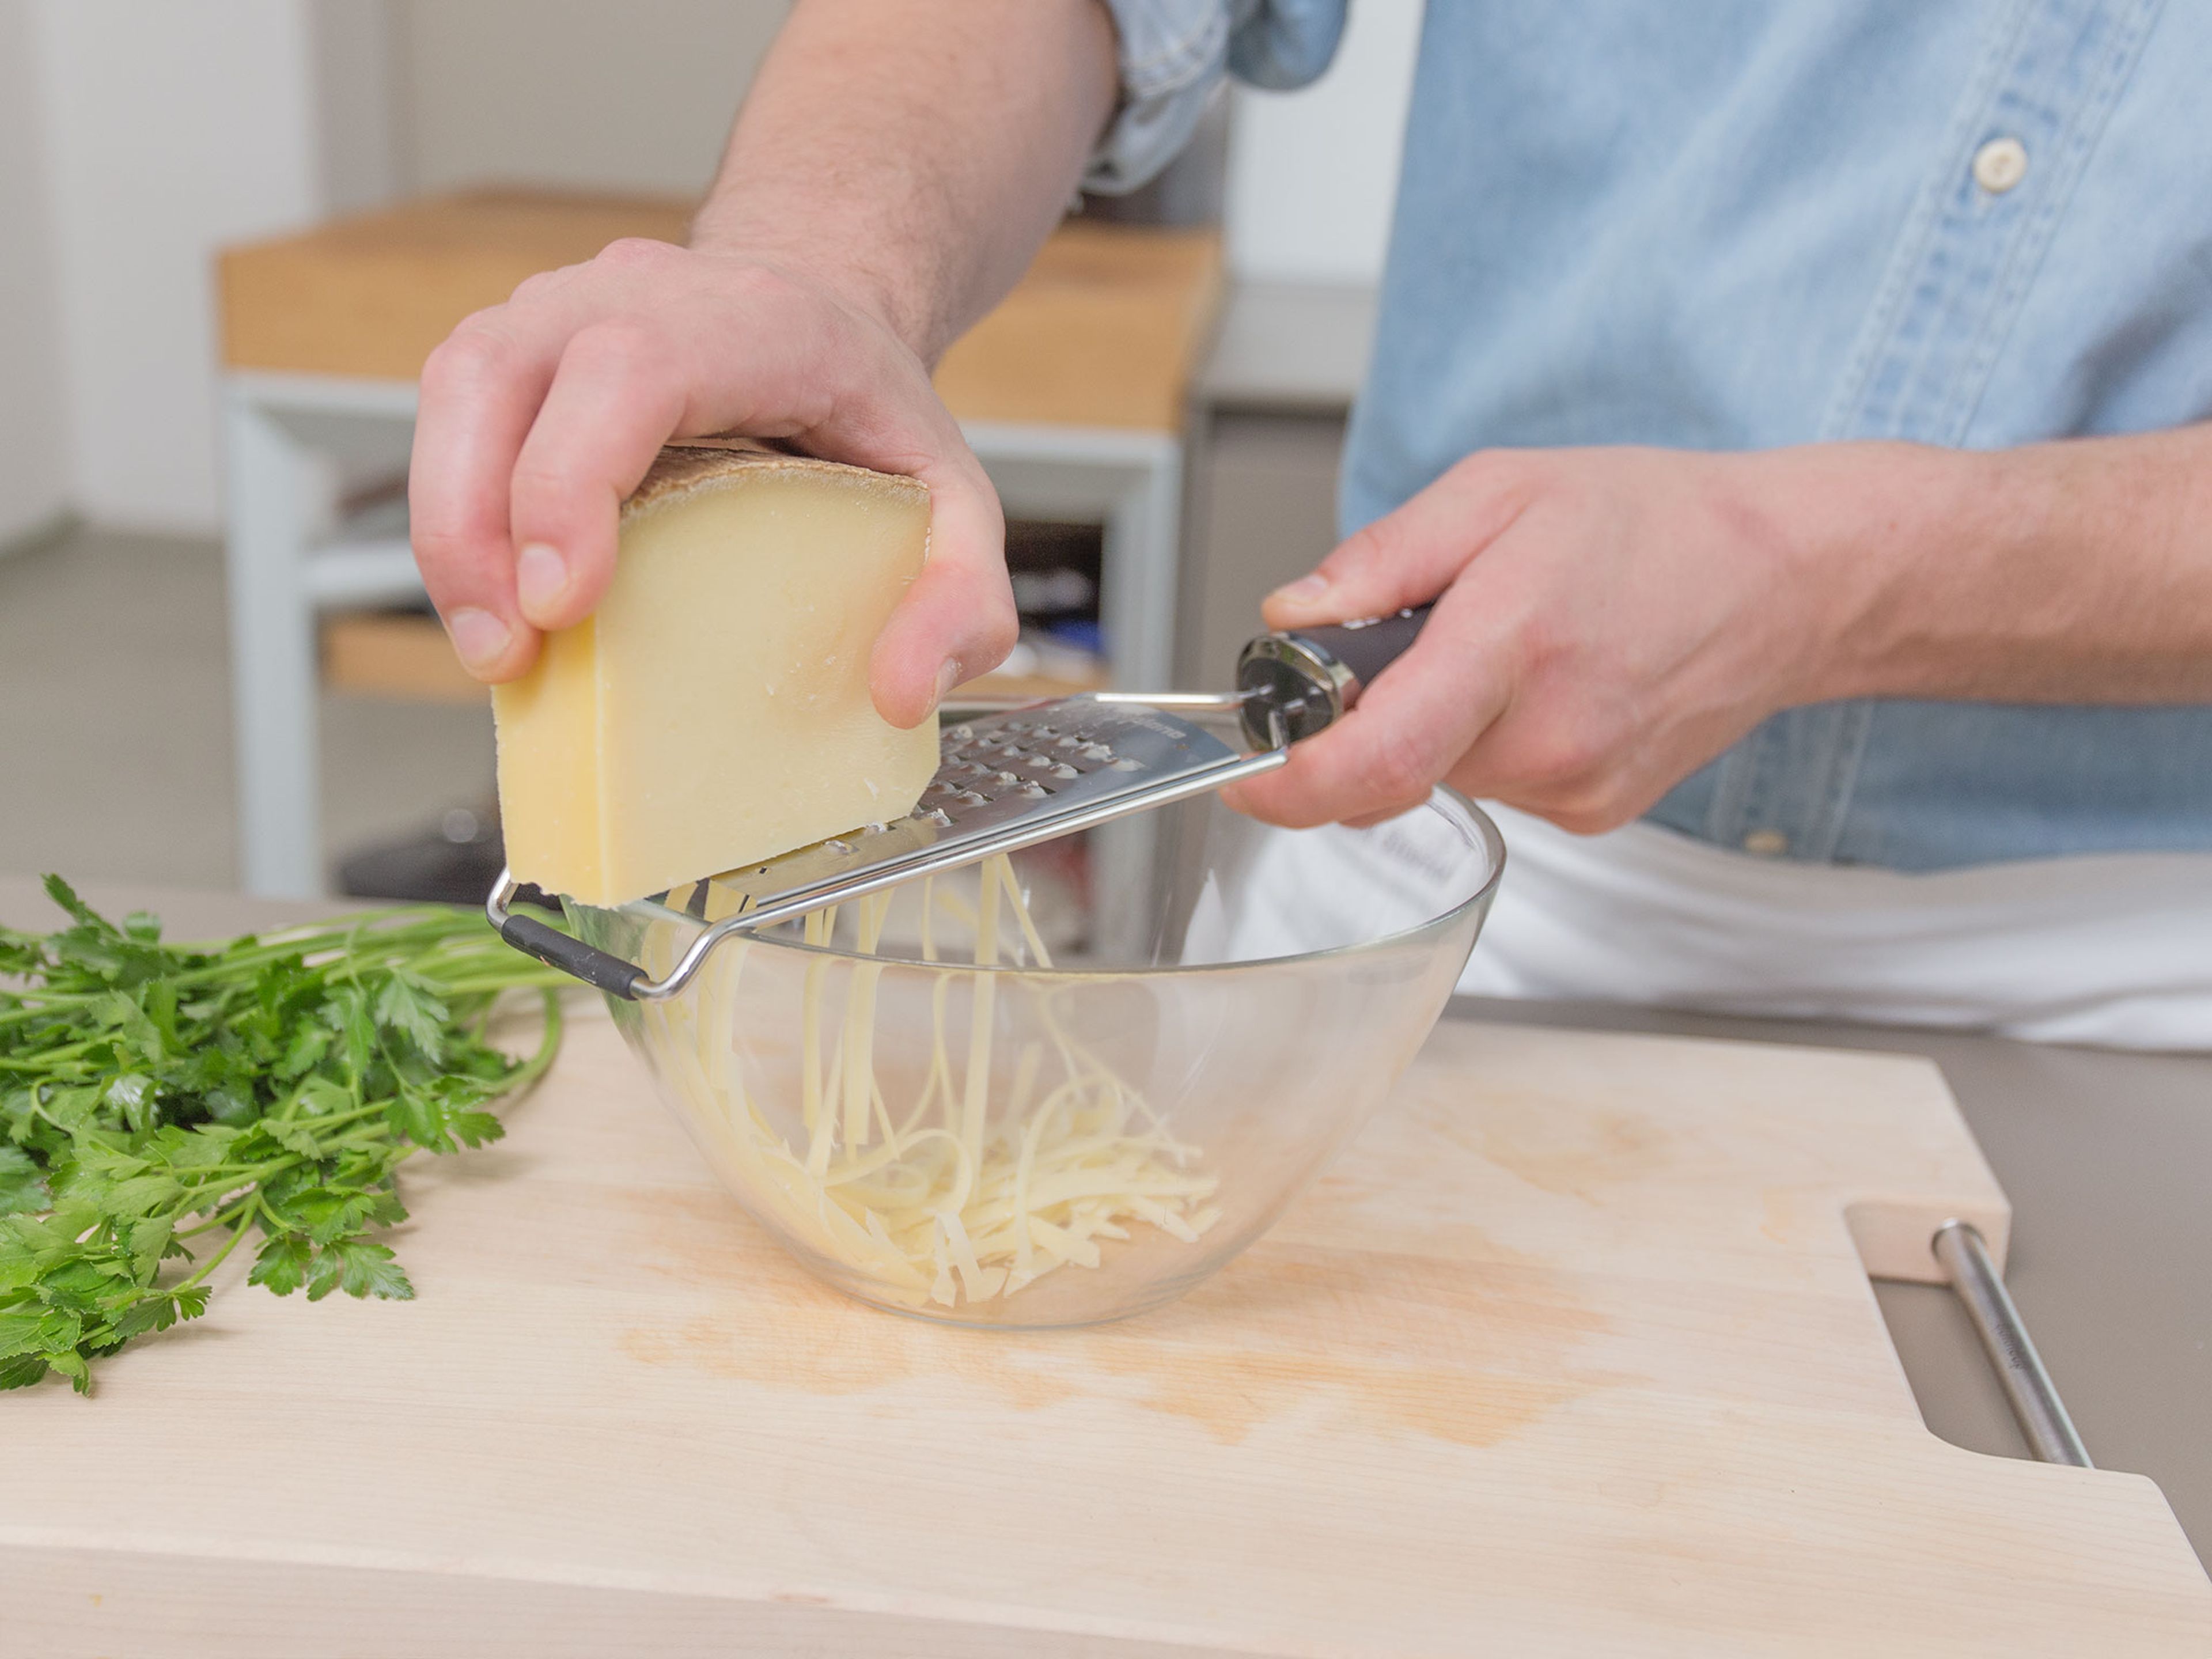 Käse reiben. Petersilie hacken und beiseitestellen. Salat waschen und in eine große Schüssel geben.